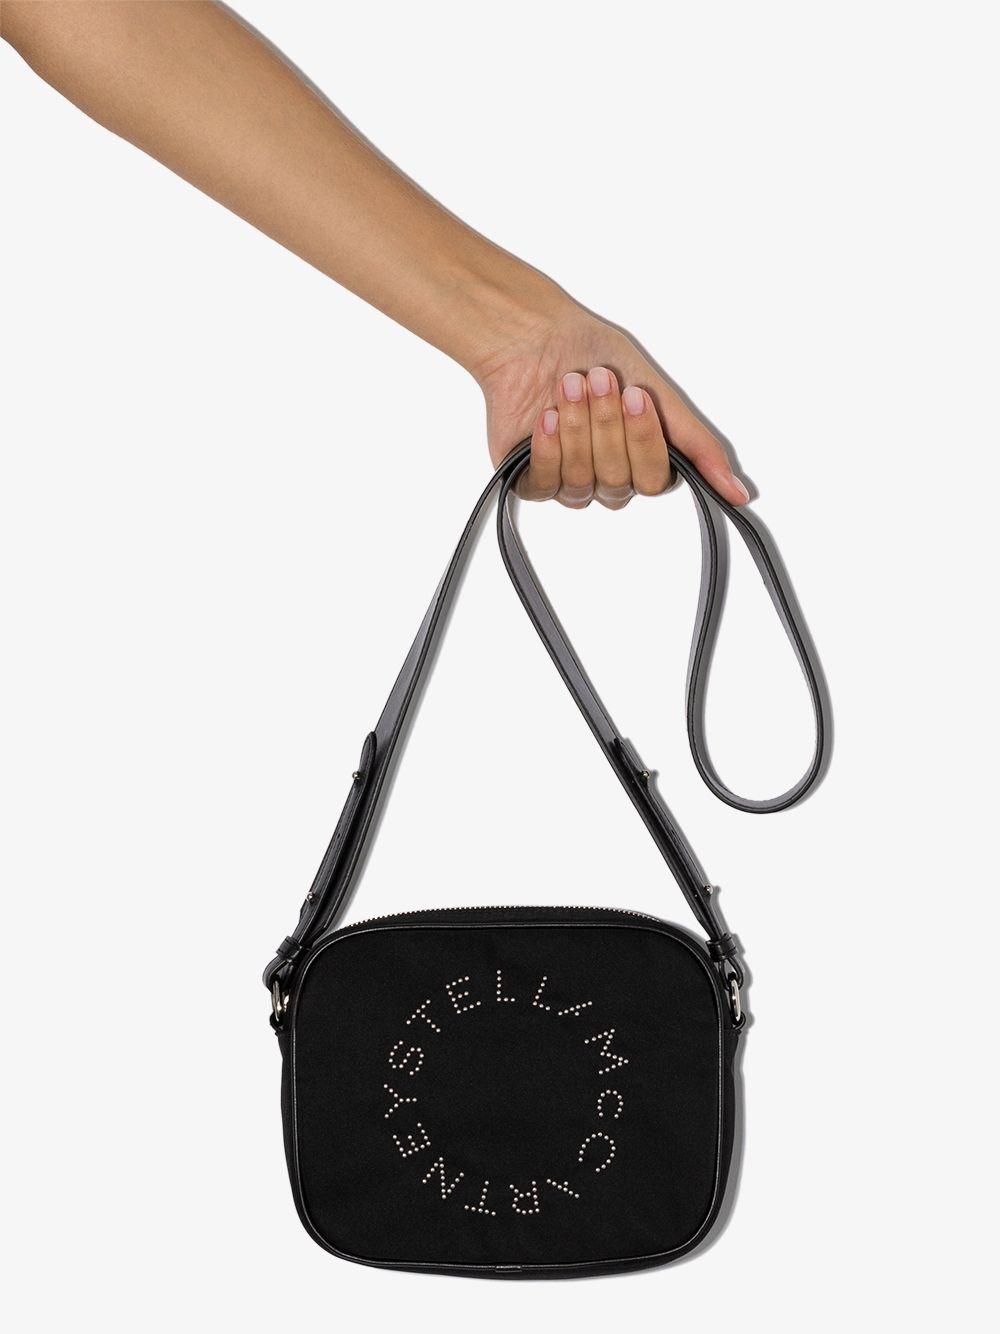 Stella McCartney Stella Logo Studded Camera Bag in Black - Lyst